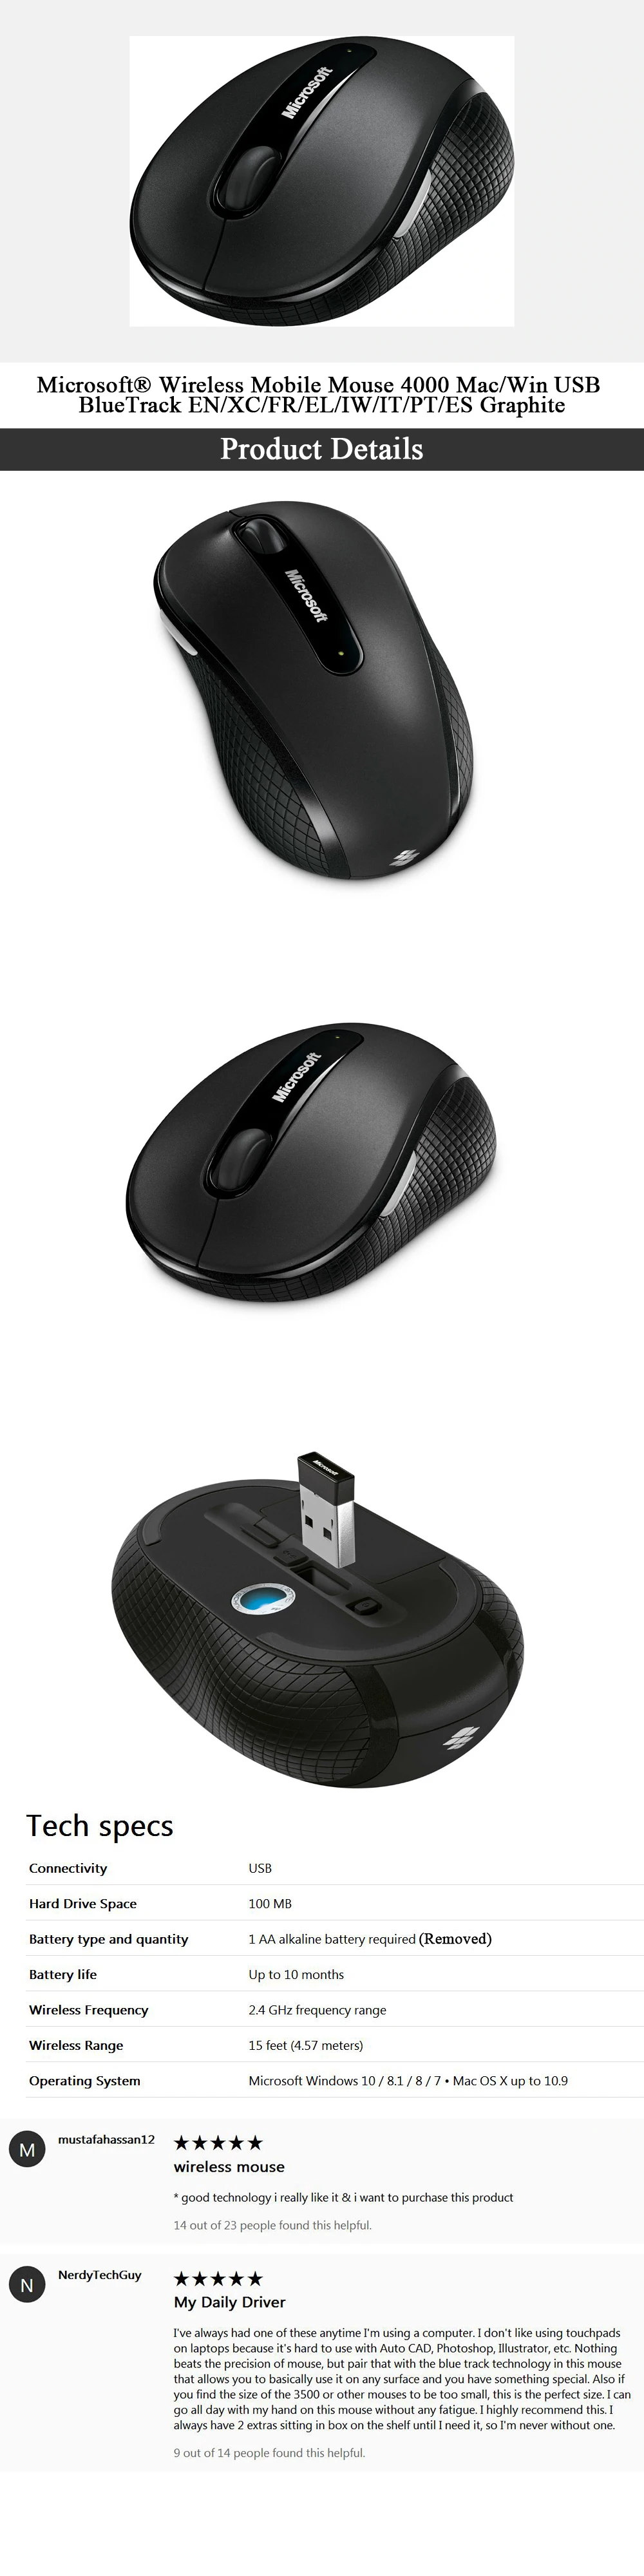 Беспроводная мышь microsoft mobile mouse 4000 с игровой мышью BlueTrack для мыши gamer pc Mac/Win USB